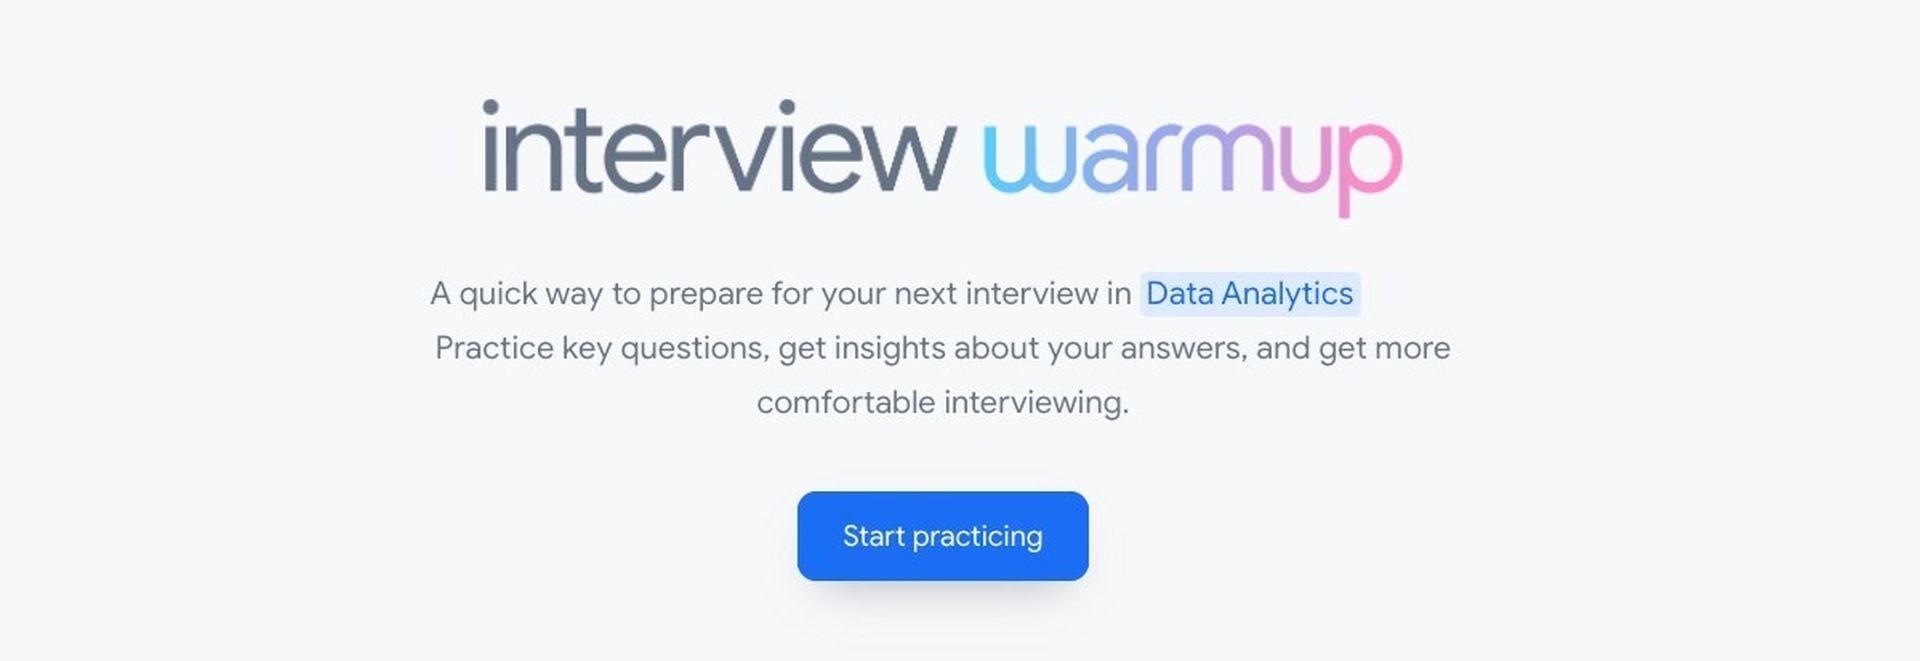 Se você estiver nervoso antes de uma entrevista de emprego, a nova ferramenta de IA chamada Google Interview Warmup ajudará você a praticar com antecedência.  O Google agora tem uma ferramenta para auxiliar os candidatos na prática de entrevistas de emprego.  É verdade que as entrevistas de emprego podem ser estressantes.  Você pode praticar e estar mais preparado antes de ir para uma entrevista graças à nova ferramenta do Google.